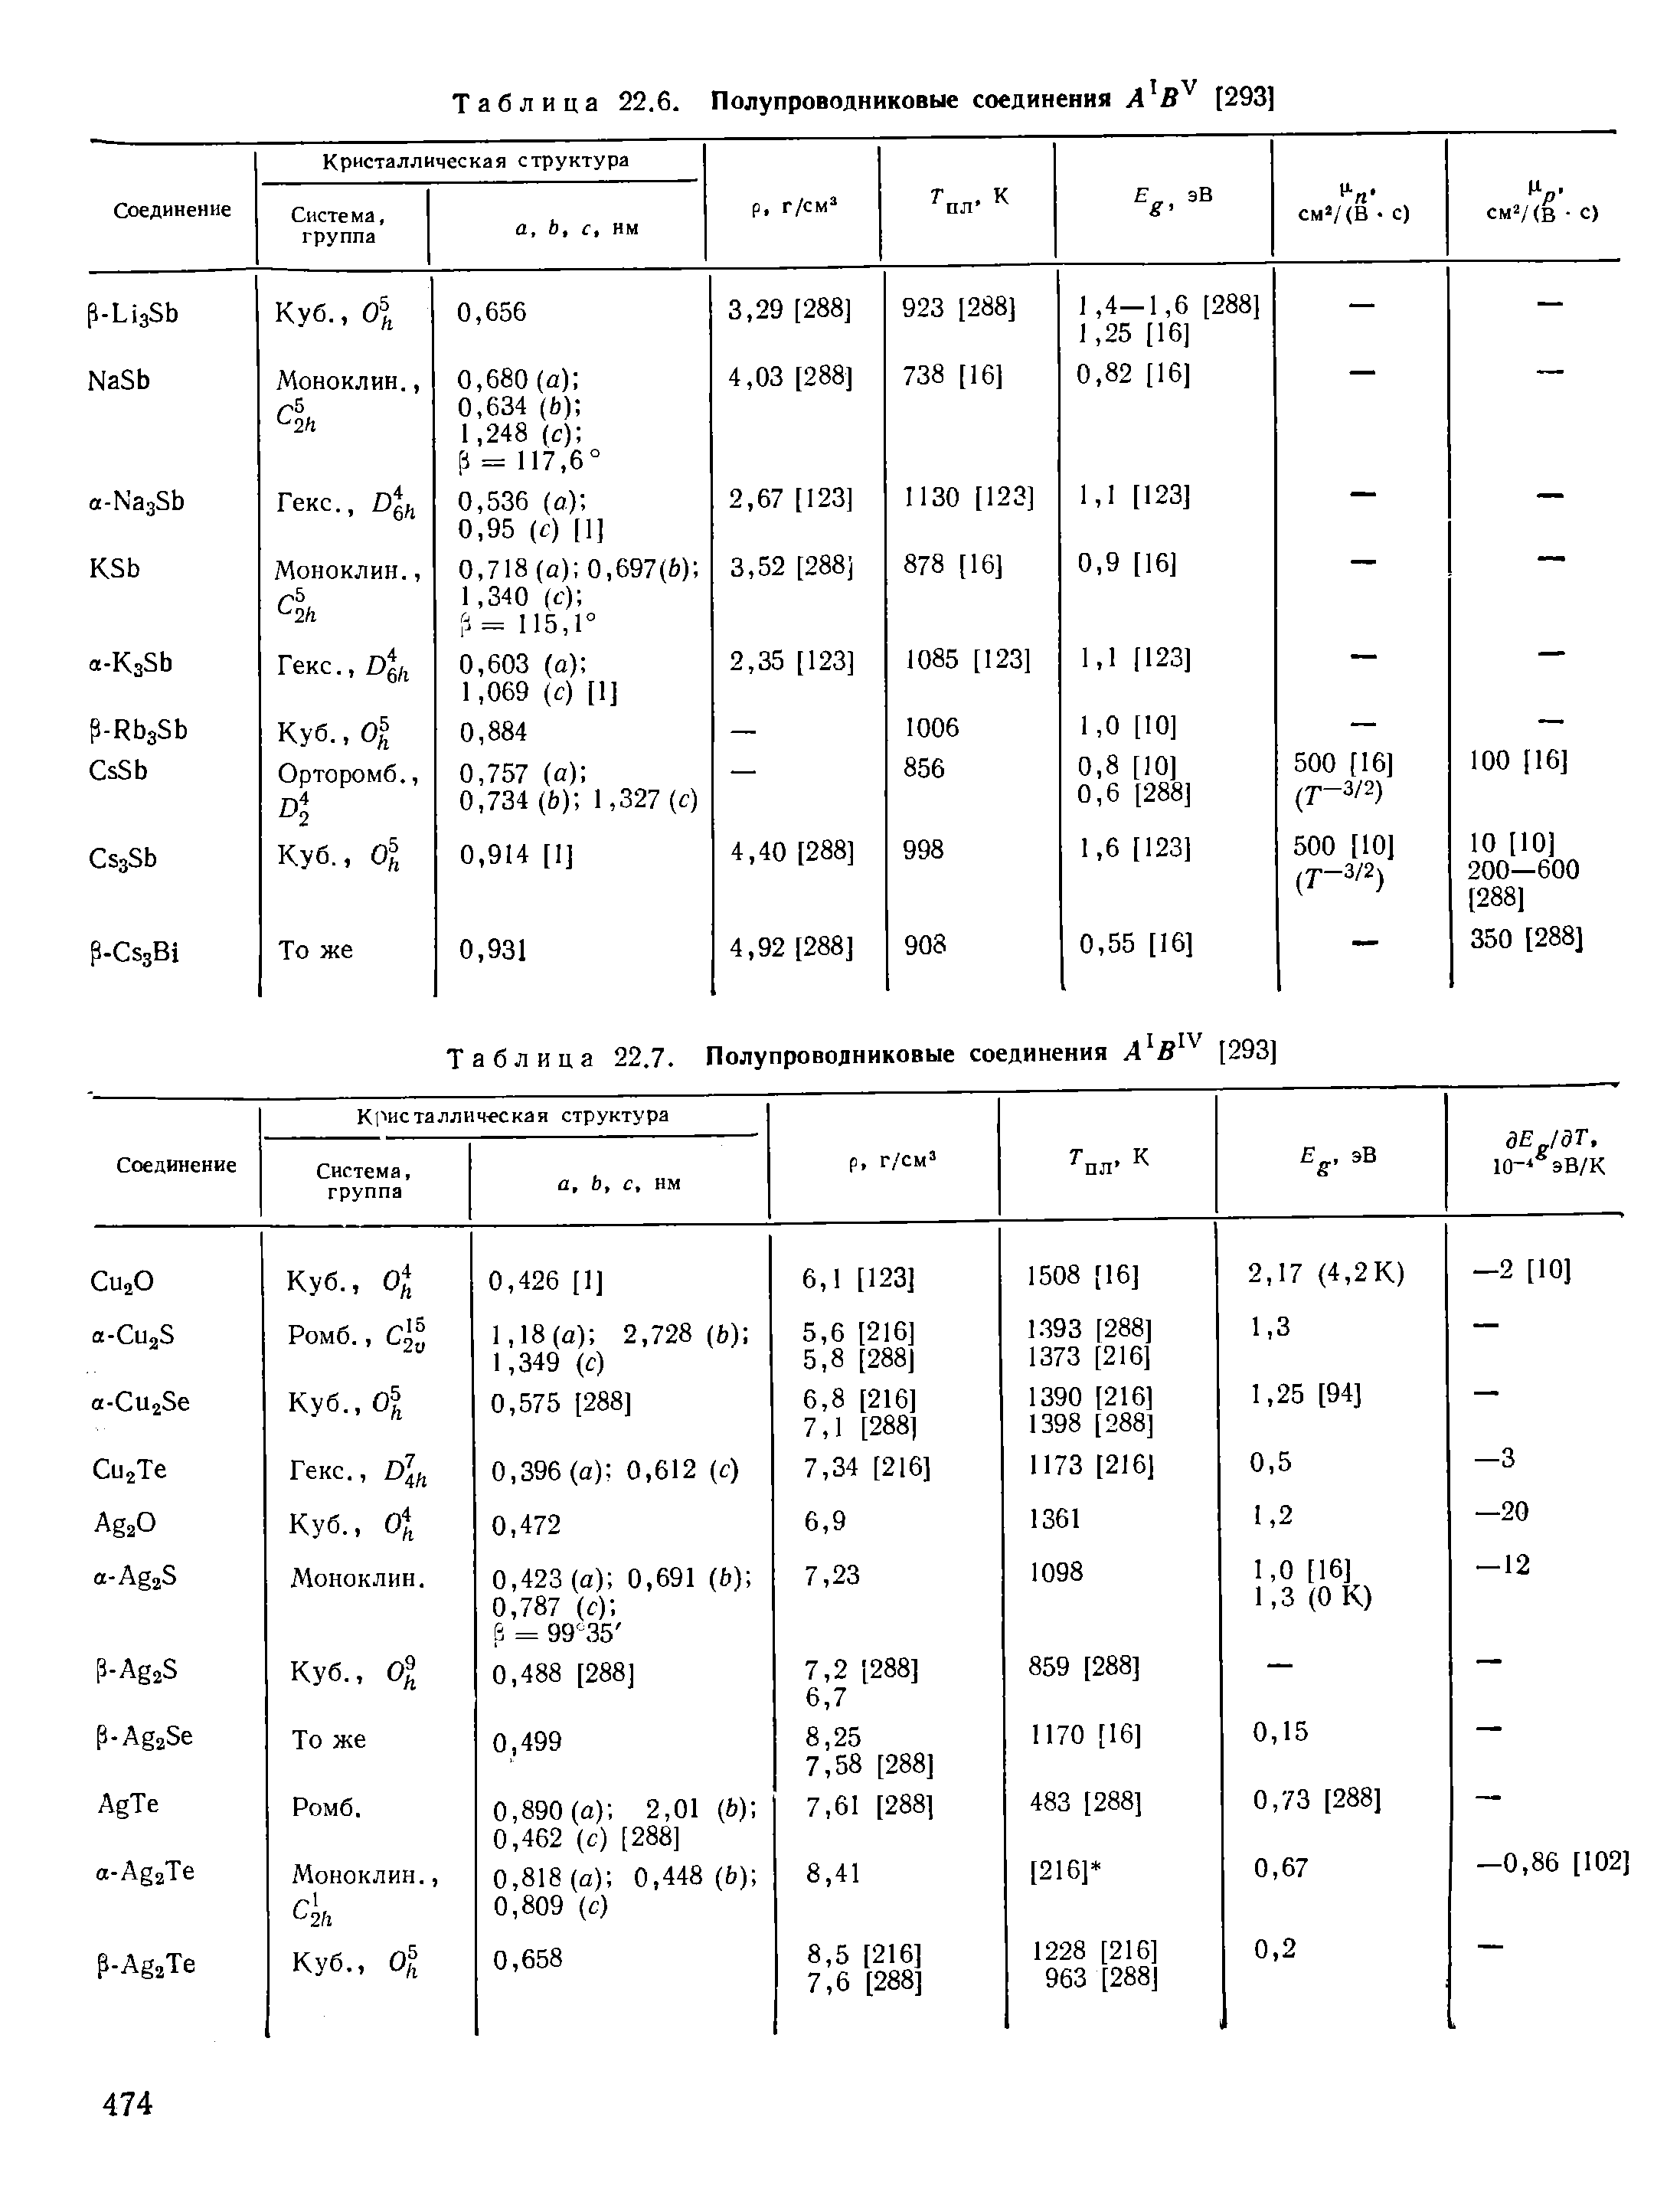 Таблица 22.7. Полупроводниковые соединения [293]
